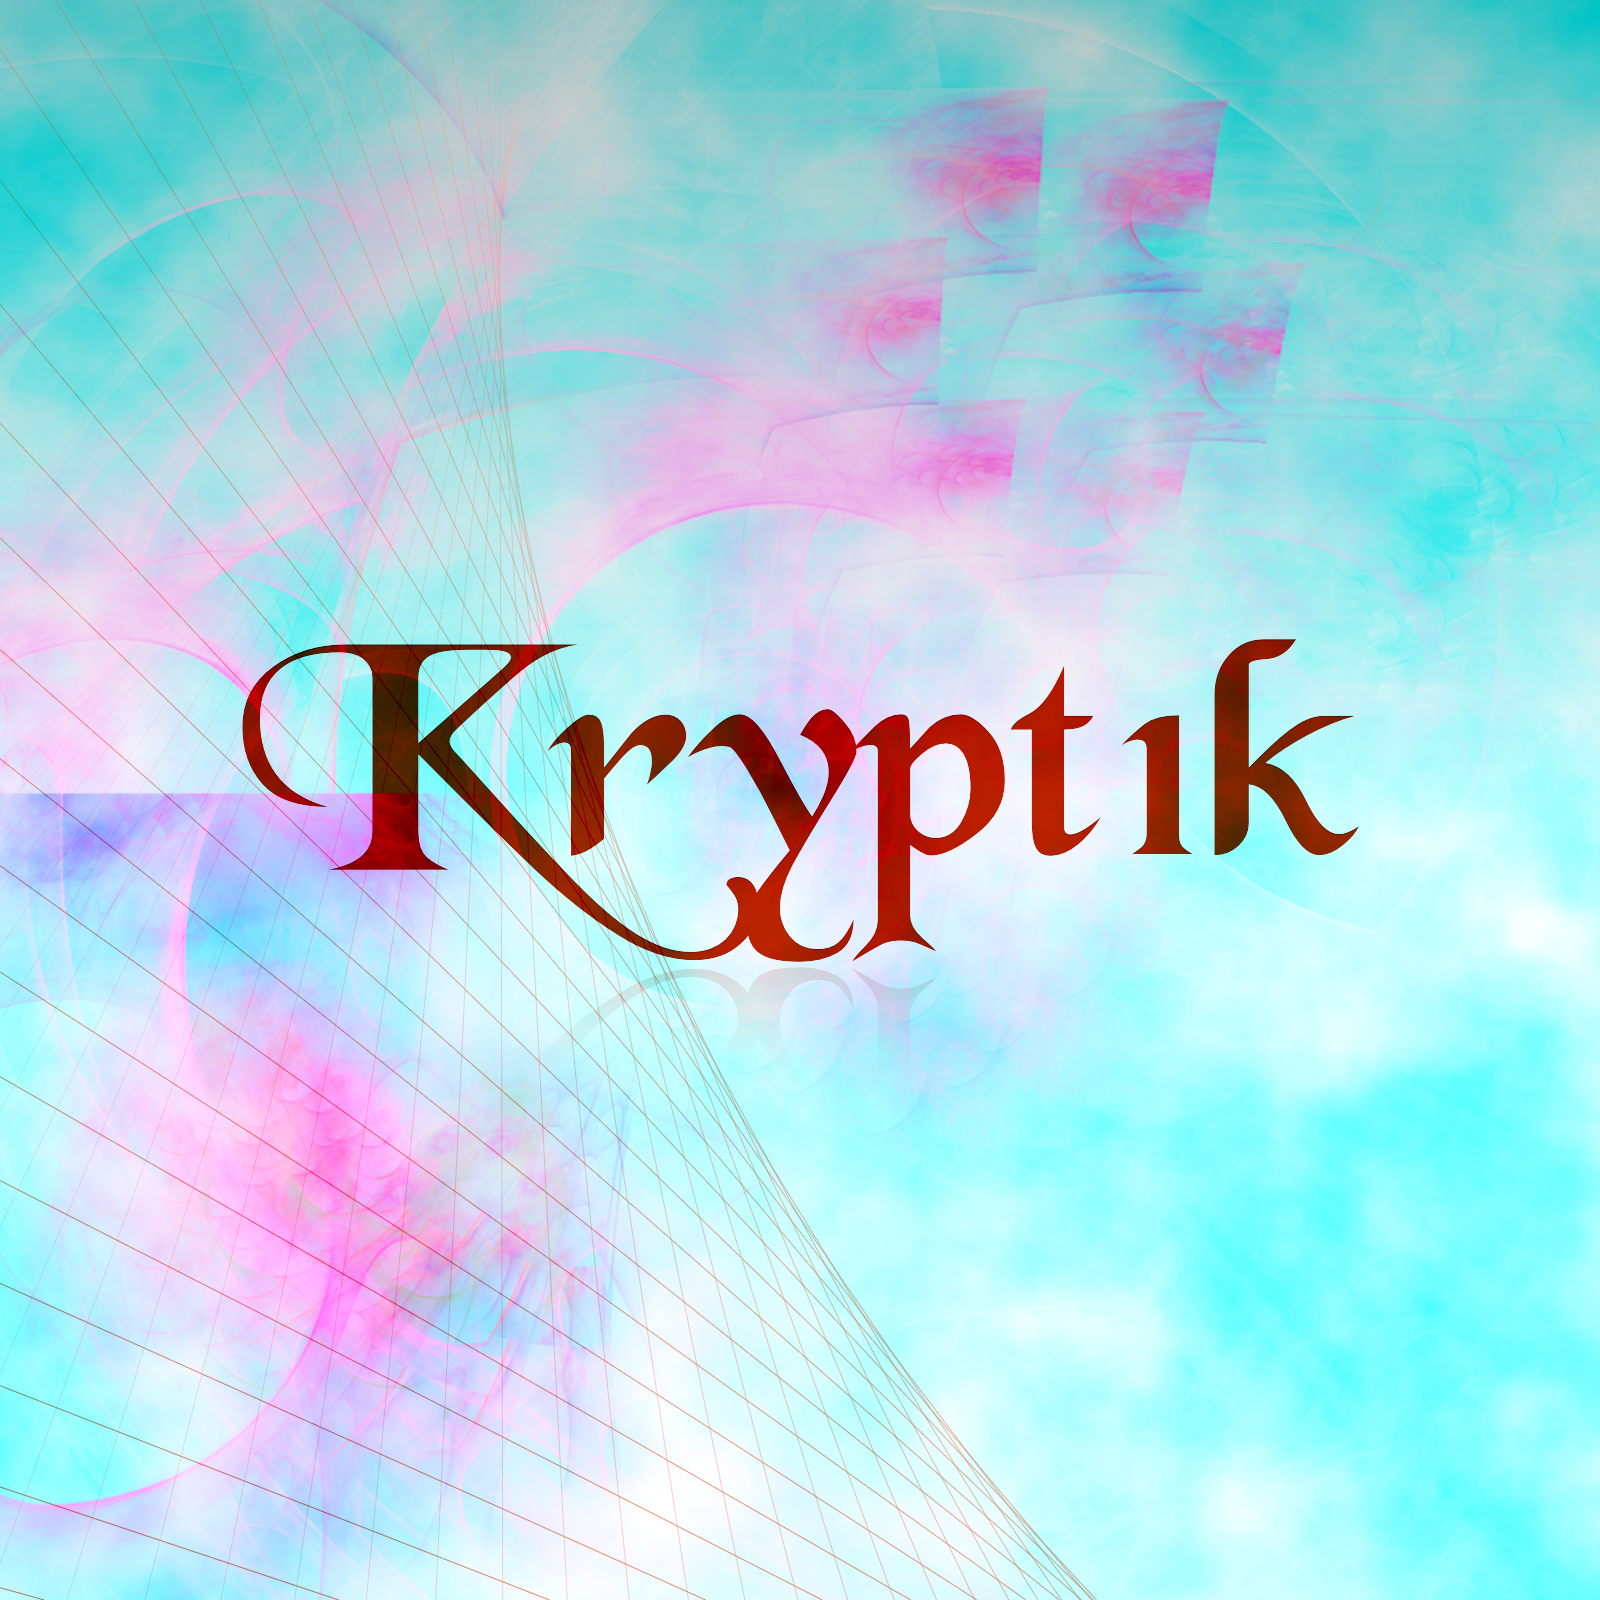 Krypt1k - EP